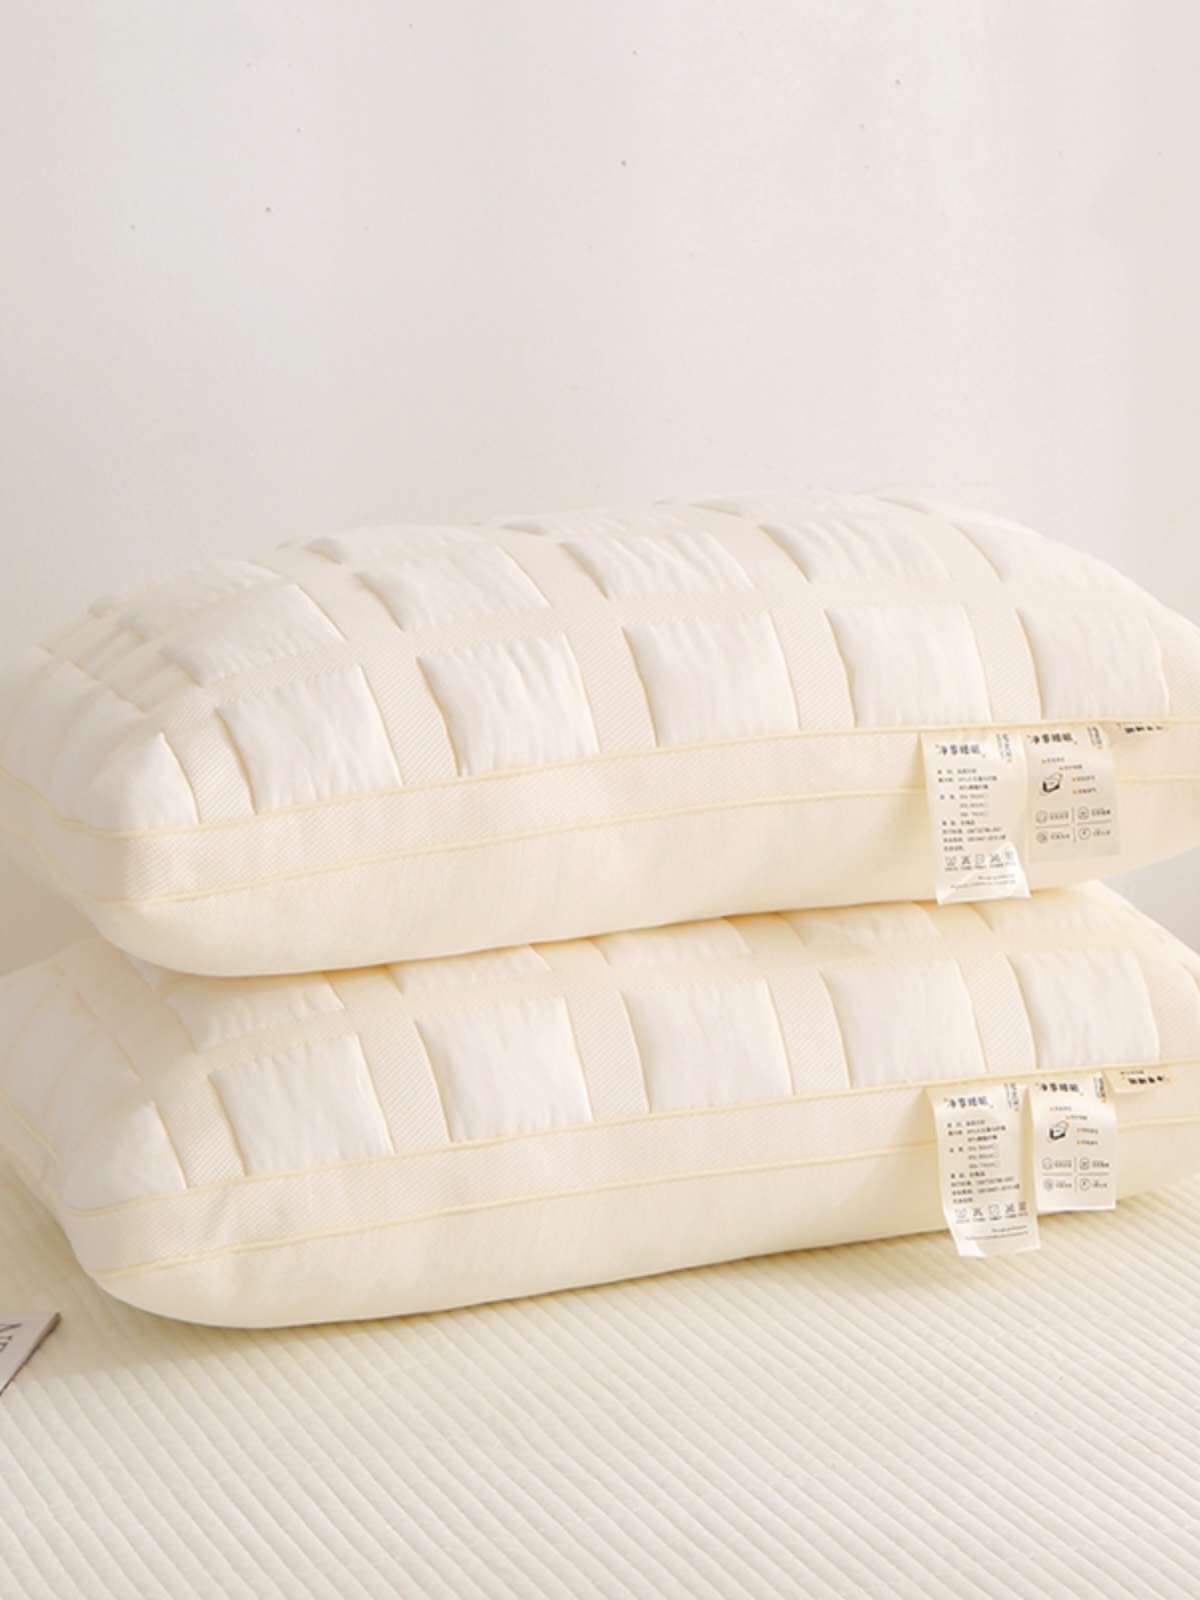 針織軟麵包枕單隻裝 舒適助眠宿舍家用枕頭單人枕 (8.3折)